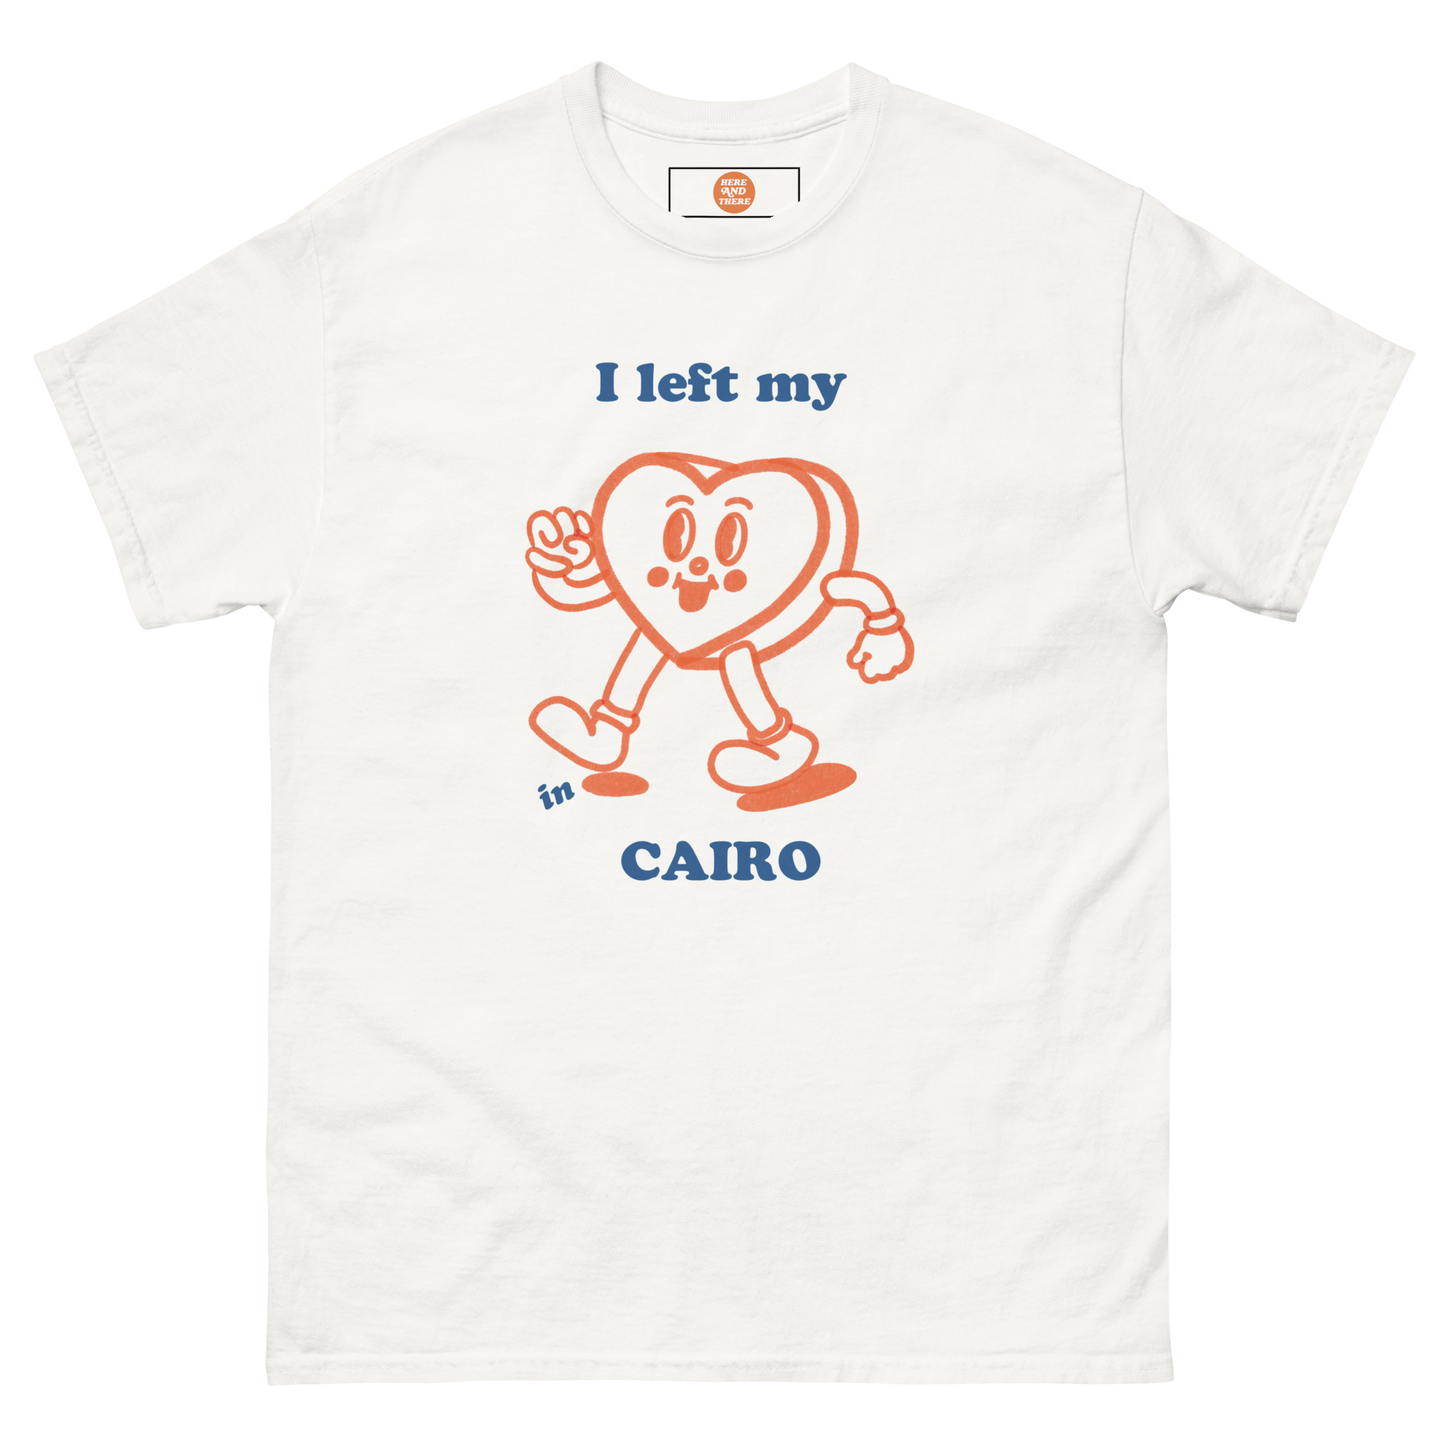 CAIRO + WHITE